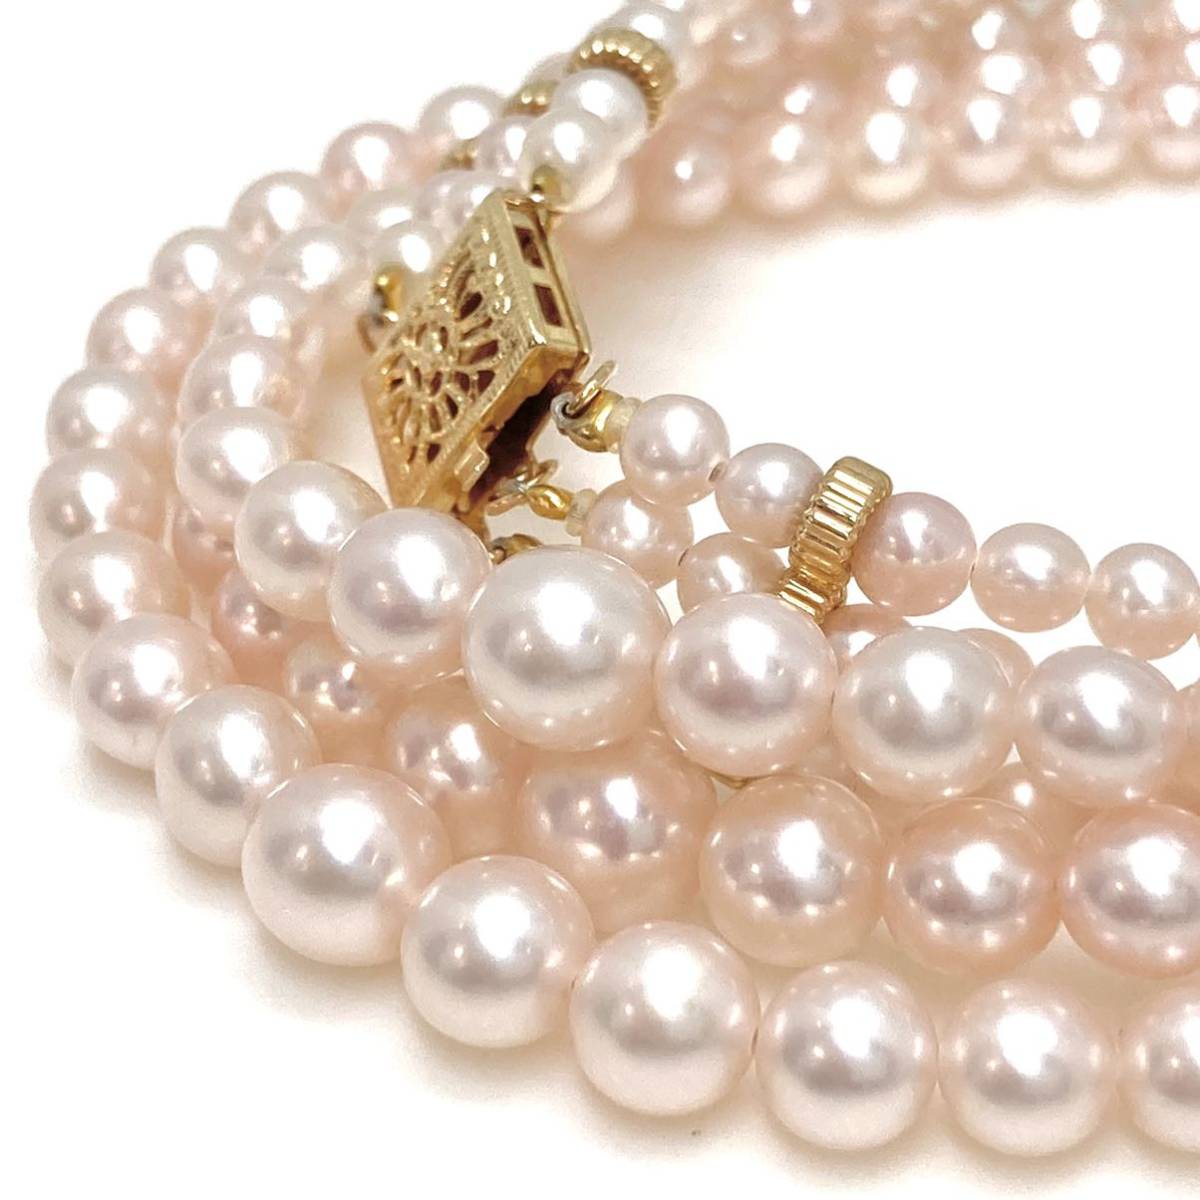 良质!!豪华!!《K14YG アコヤ本真珠3连ネックレス》3.5-6.5mm珠 34.8g 38.0cm ベビーパール baby pearl necklace EA4